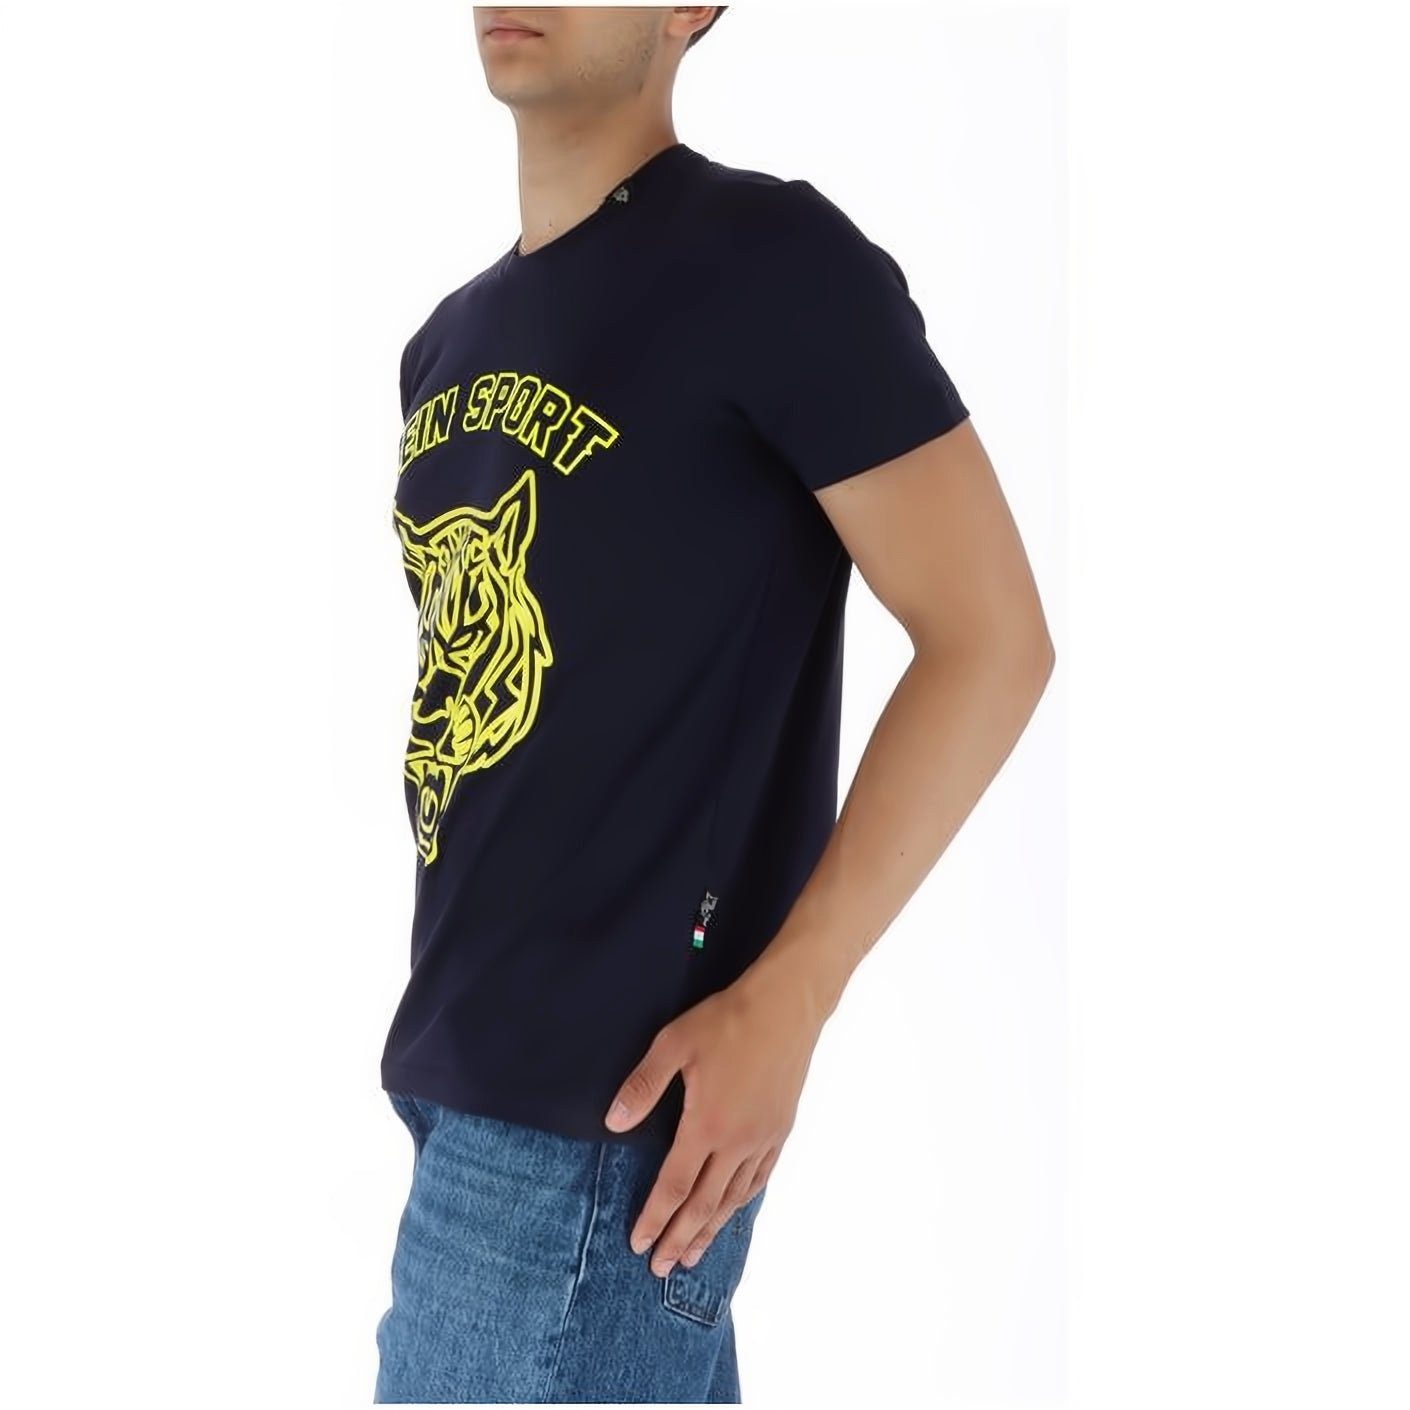 Tragekomfort, Look, hoher Farbauswahl vielfältige NECK T-Shirt SPORT ROUND Stylischer PLEIN